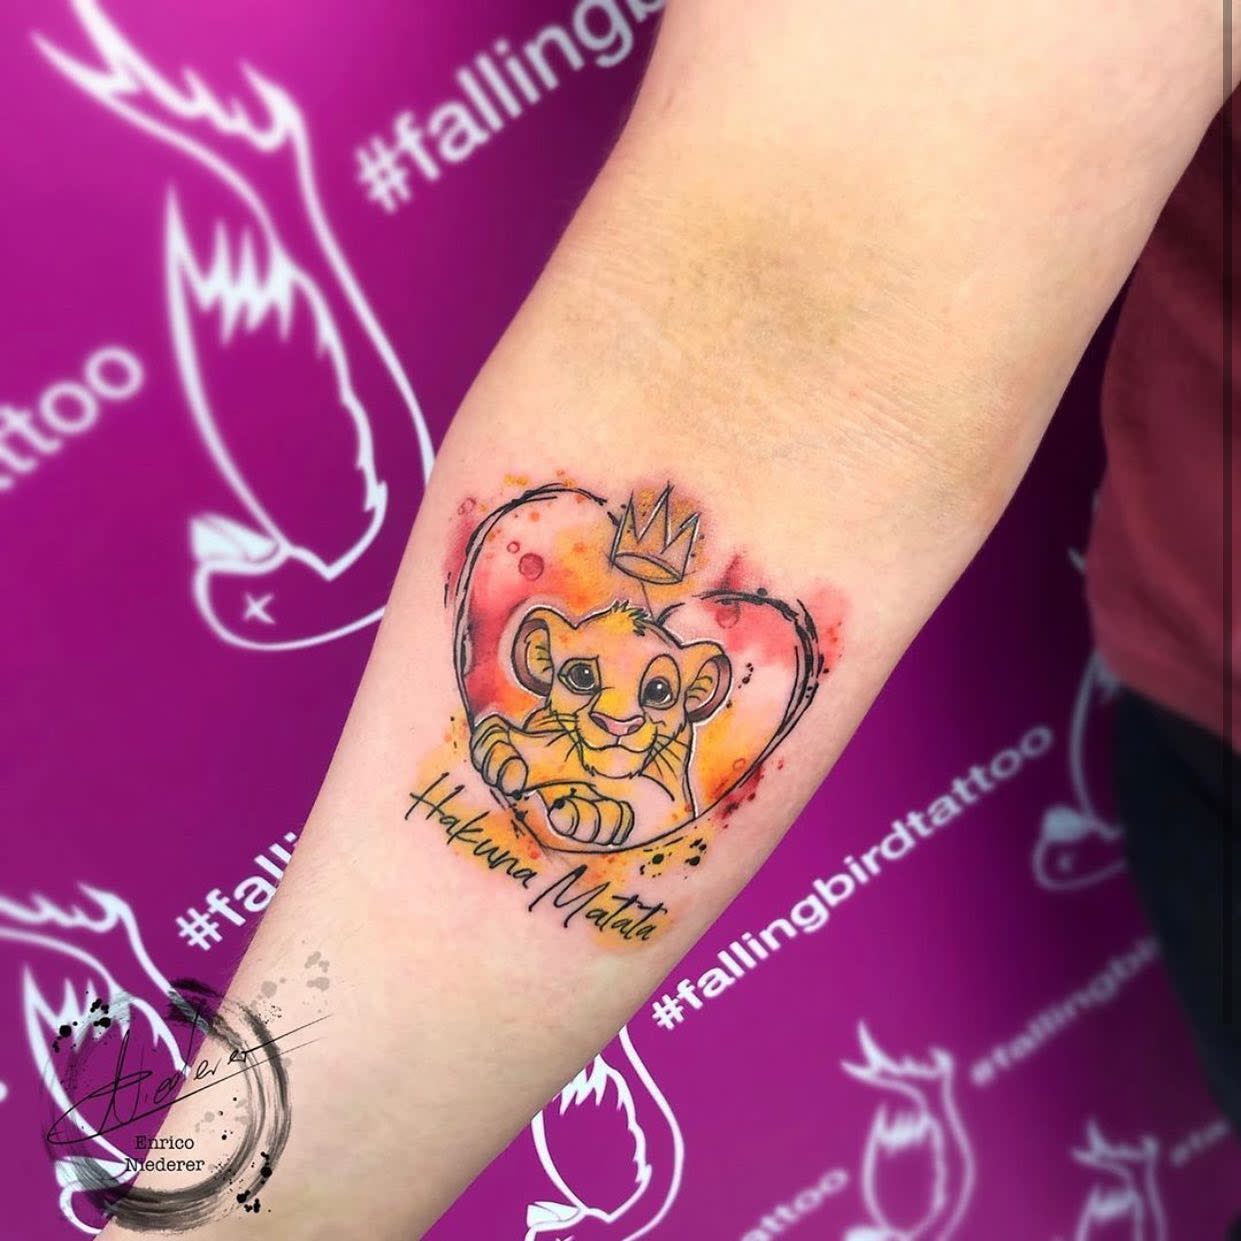 The Lion King Disney tattoo by AntoniettaArnoneArts on DeviantArt